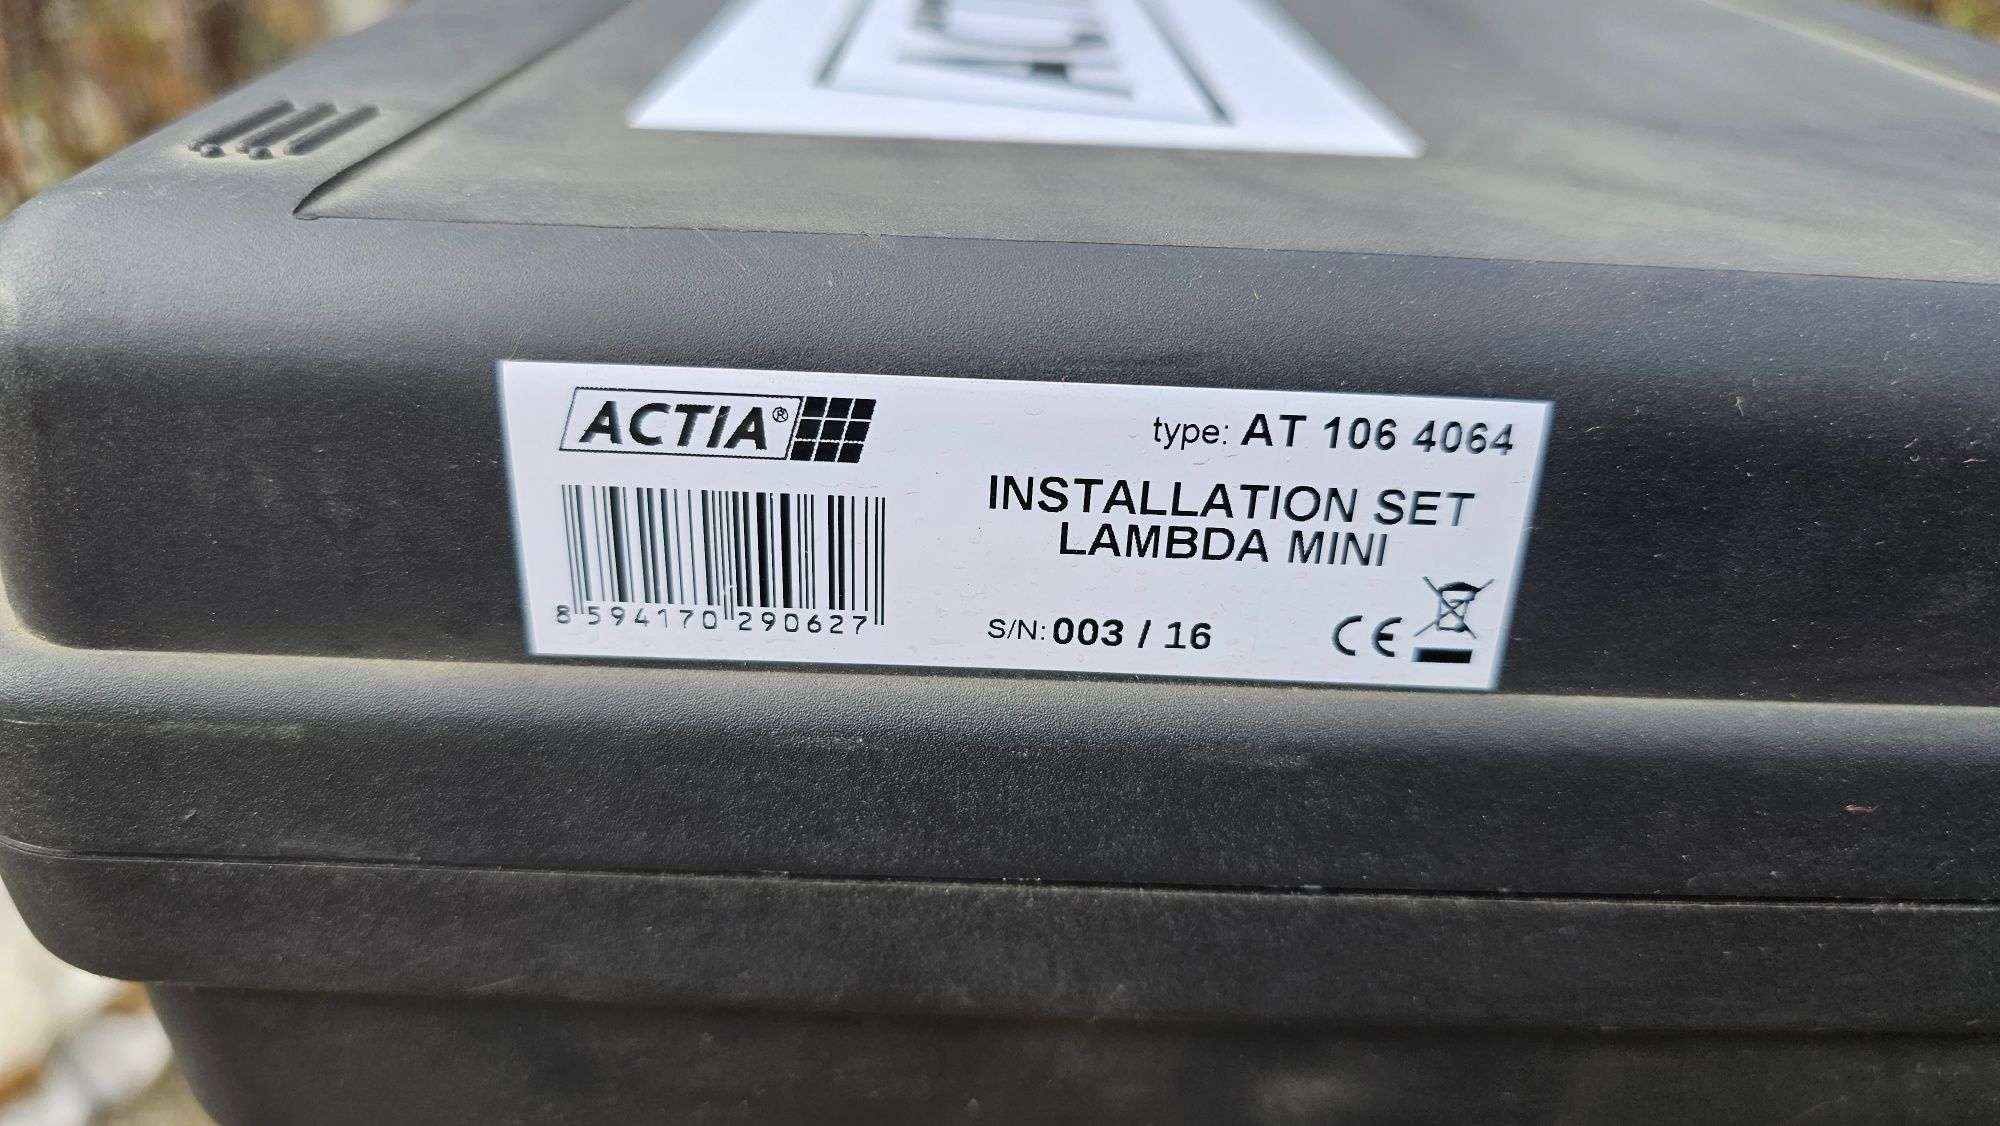 Actia DIAG 4 BIKE, Installation Set Lambda Mini